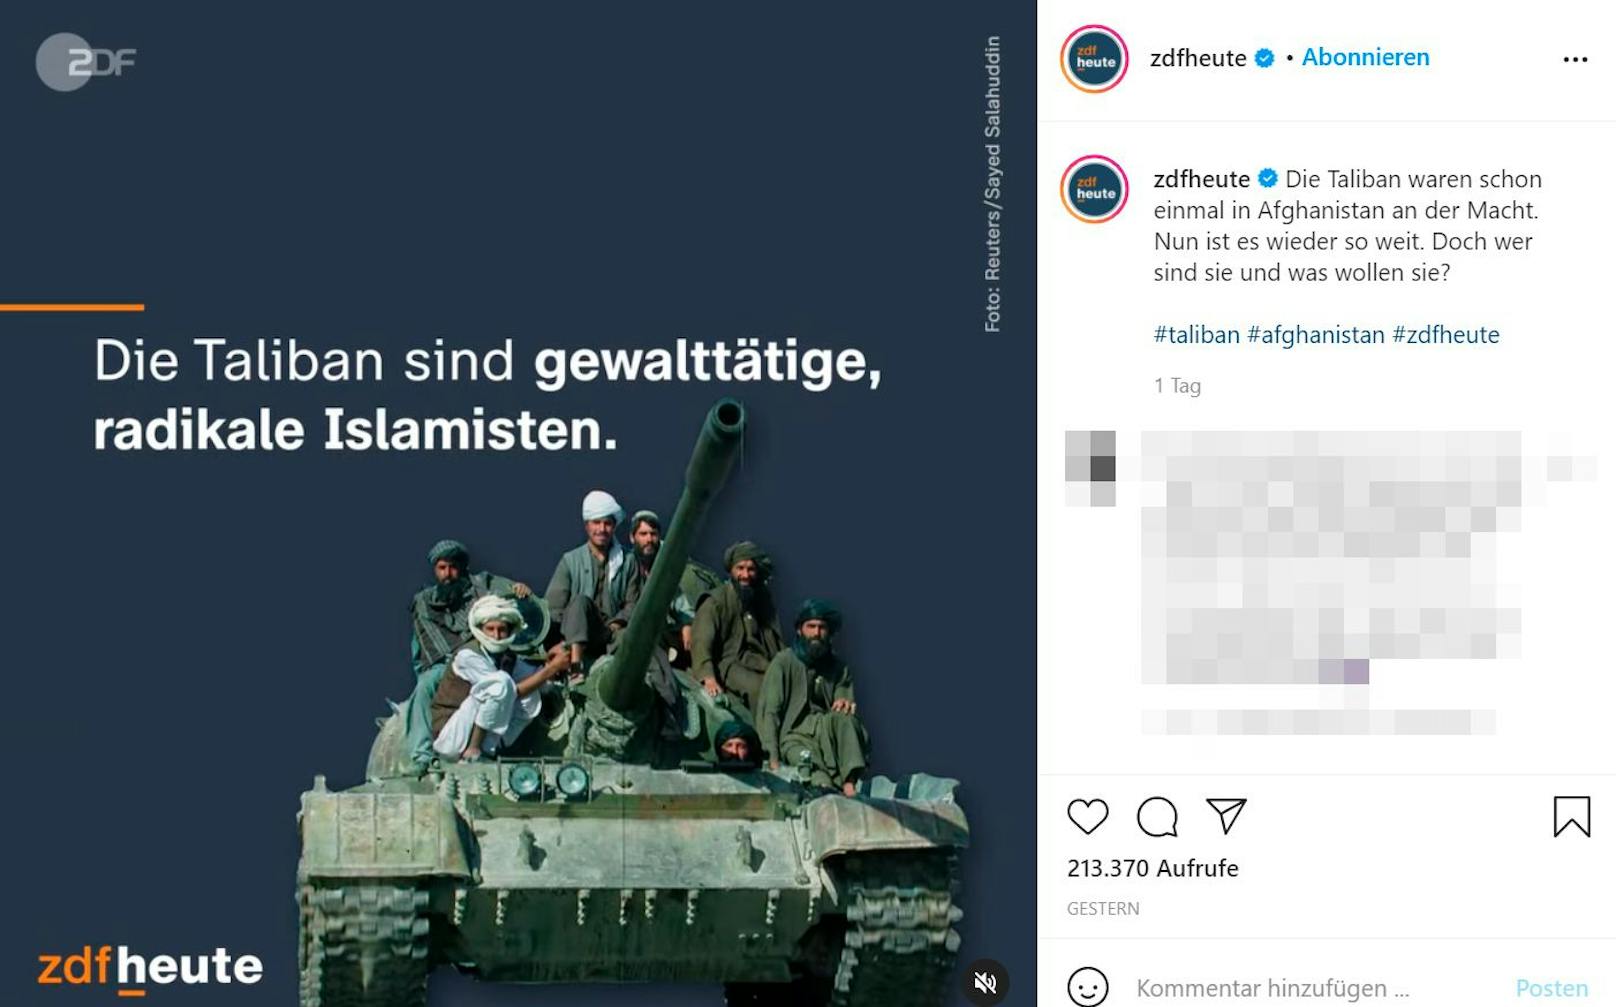 In einem späteren ZDF-Beitrag gibt es dann keine Islamist*innen mehr.